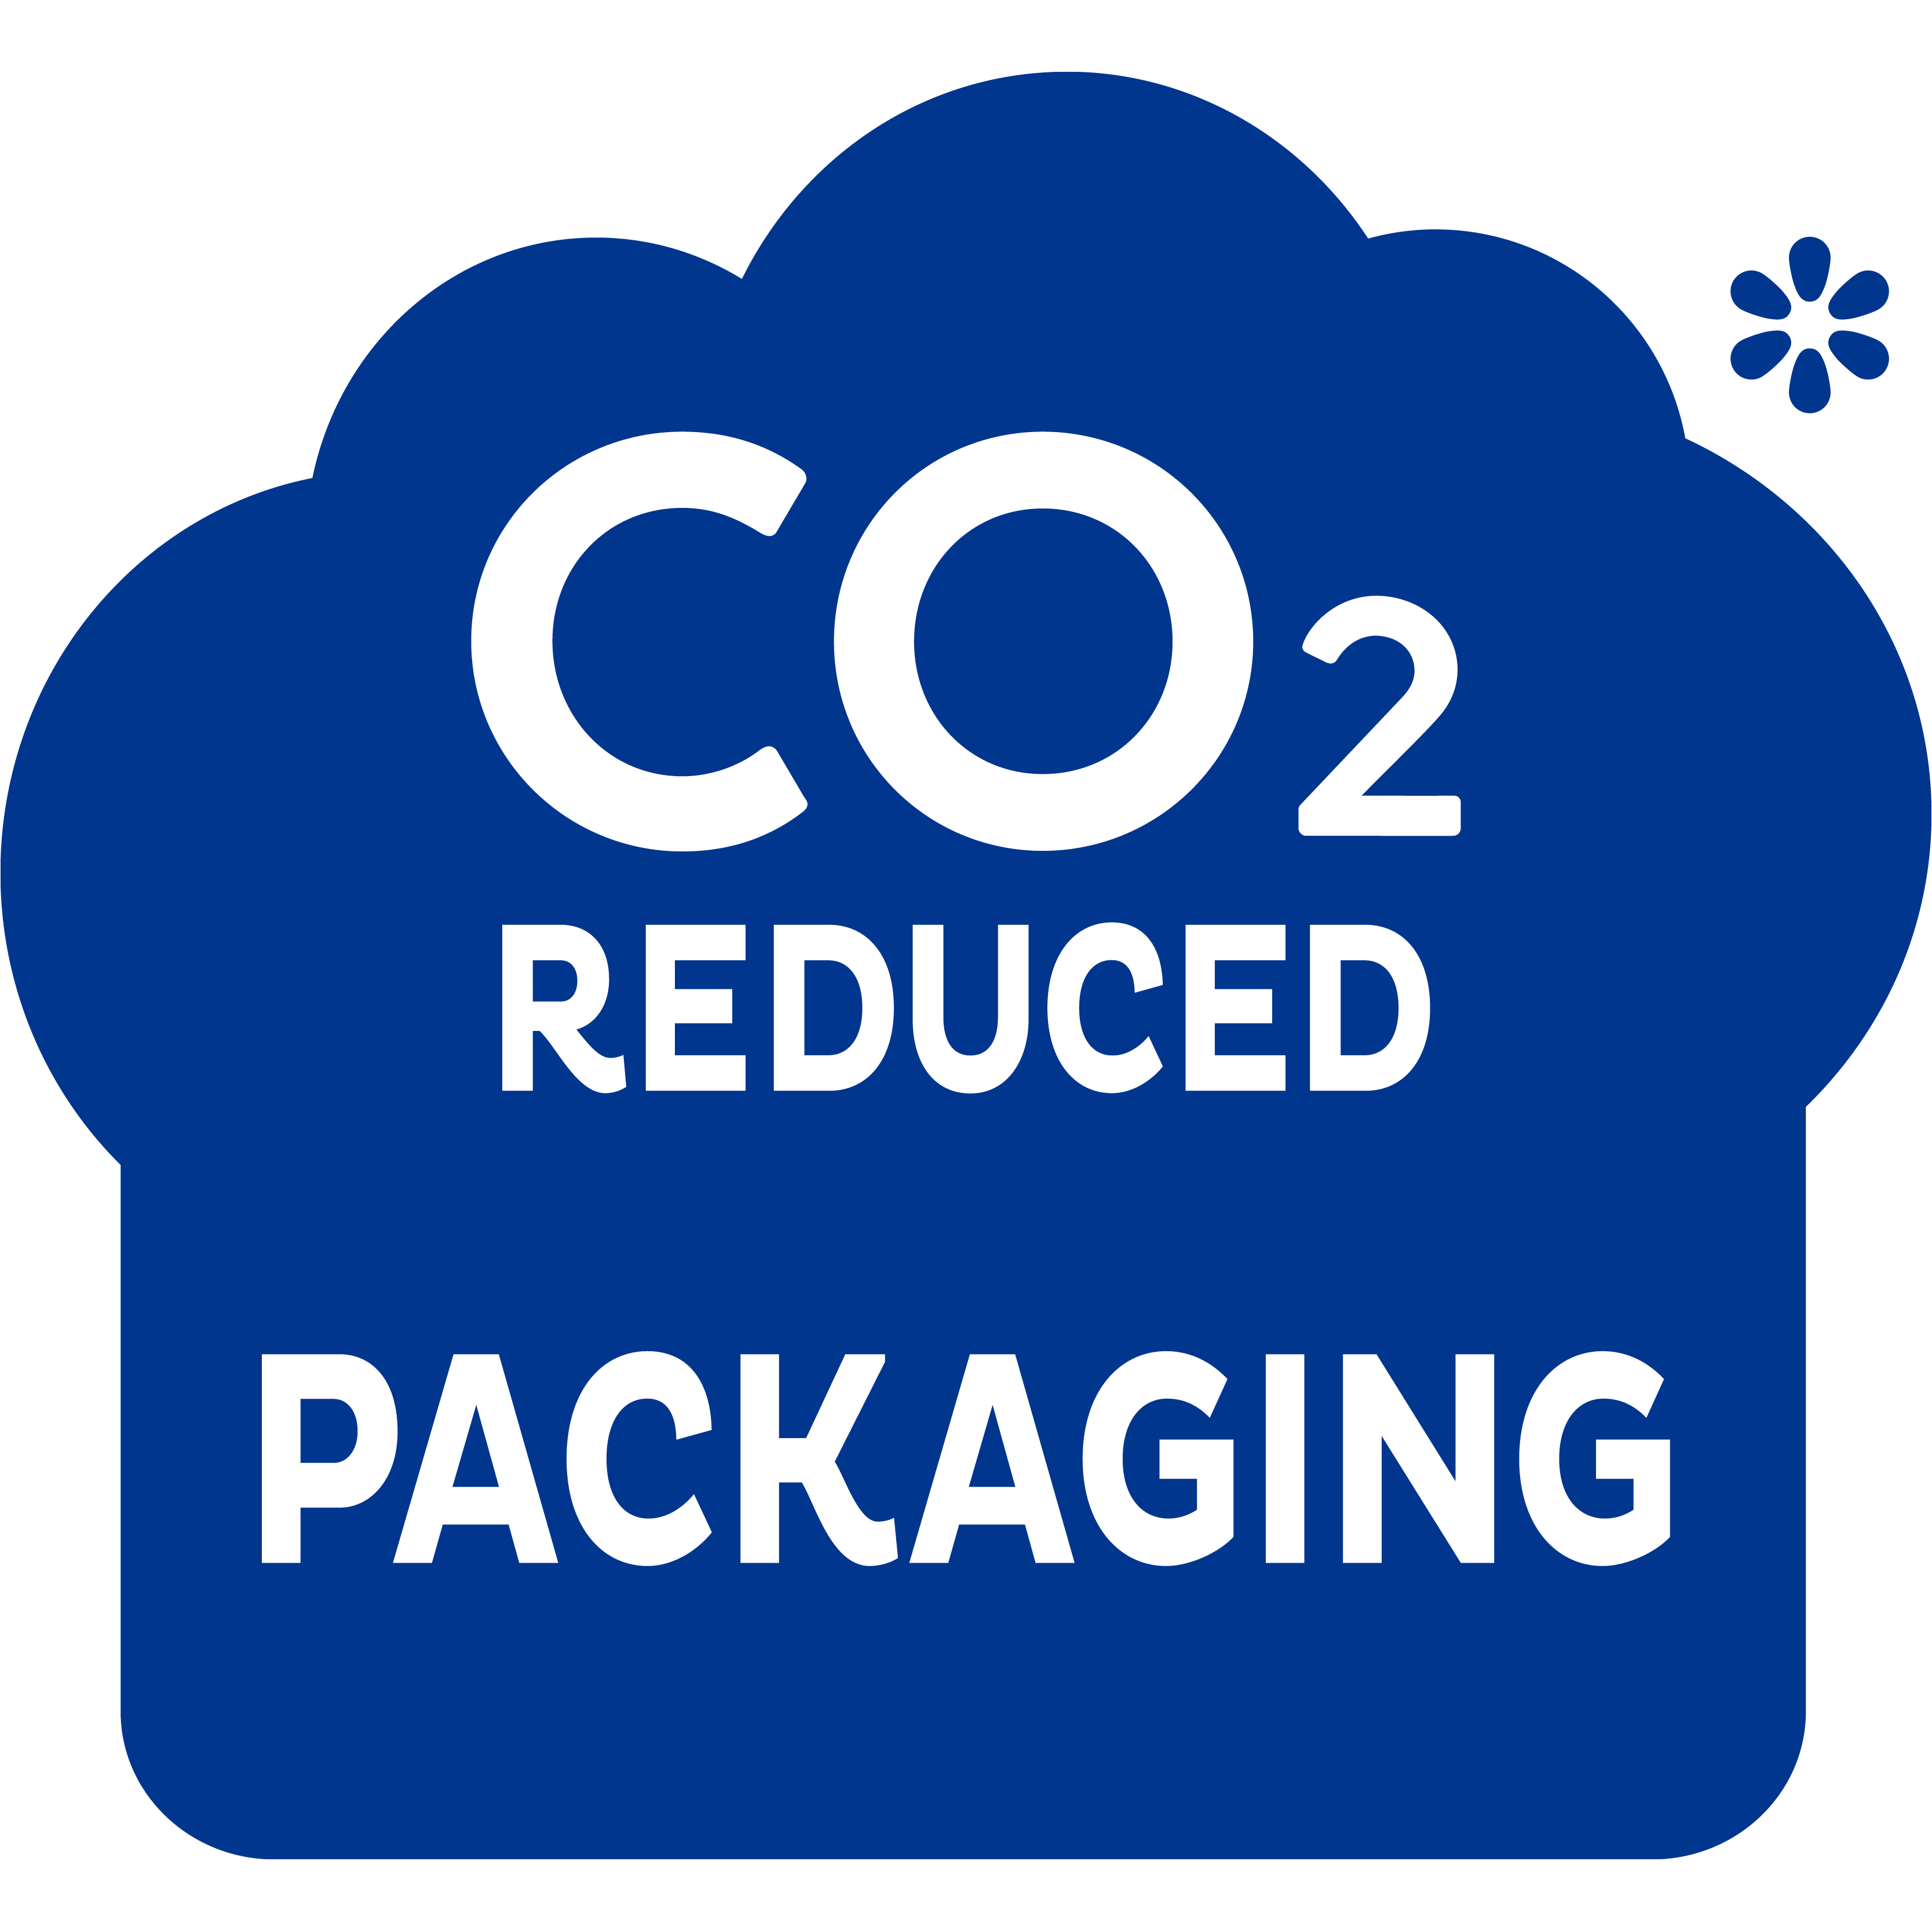 Embalagem com CO2 reduzido, um passo na direção certa